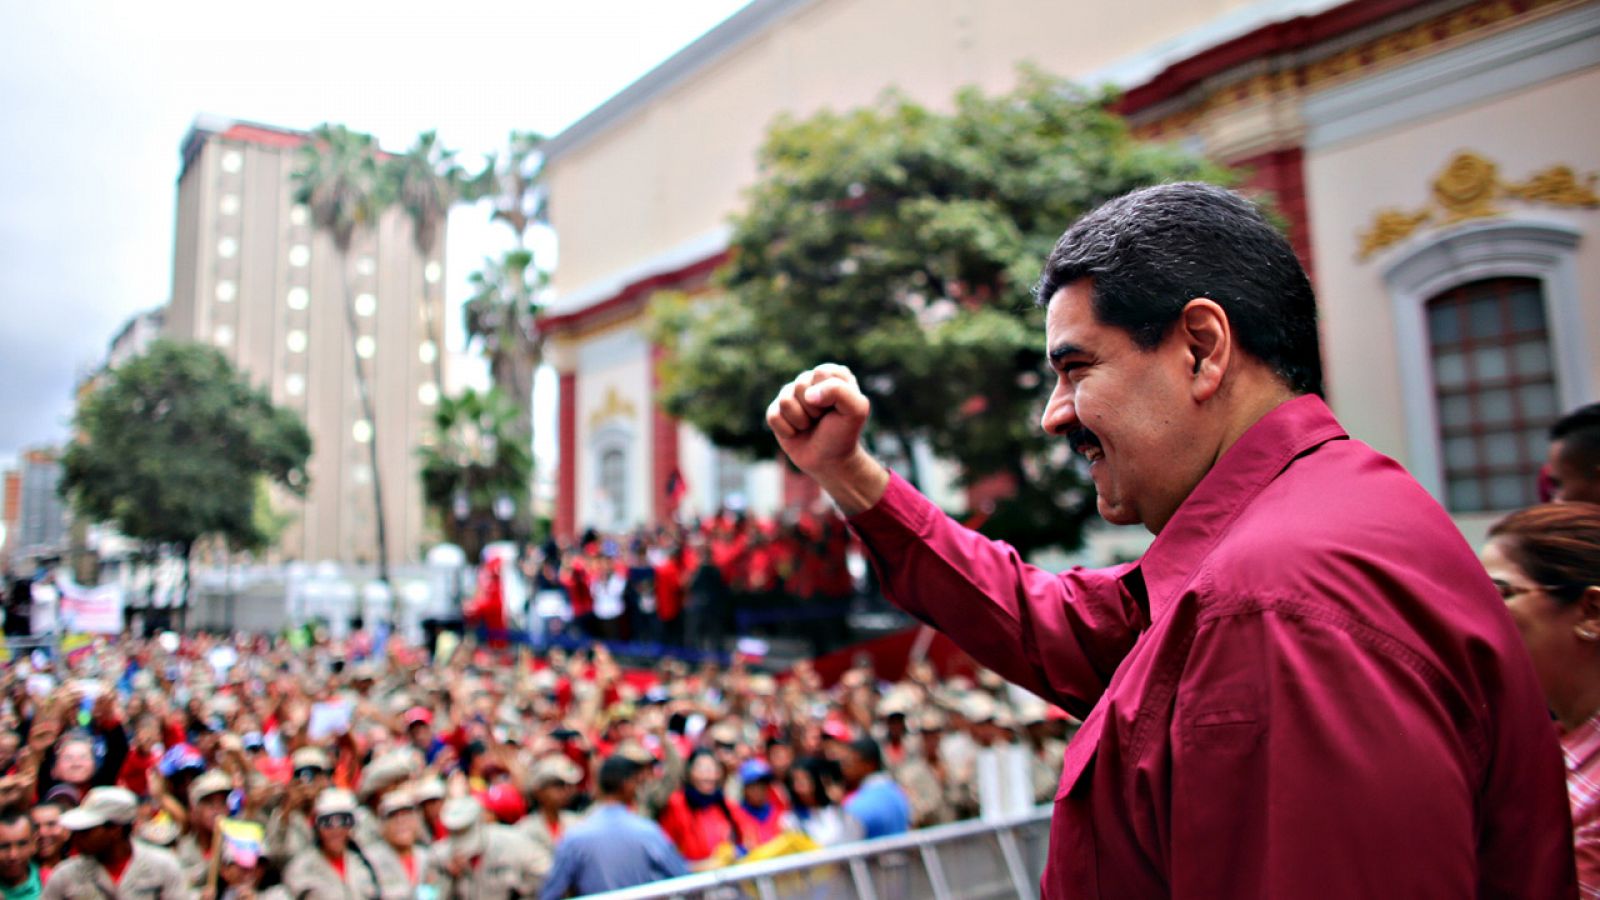 El presidente de Venezuela, Nicolas Maduro, saluda a sus simpatizantes en un acto reciente